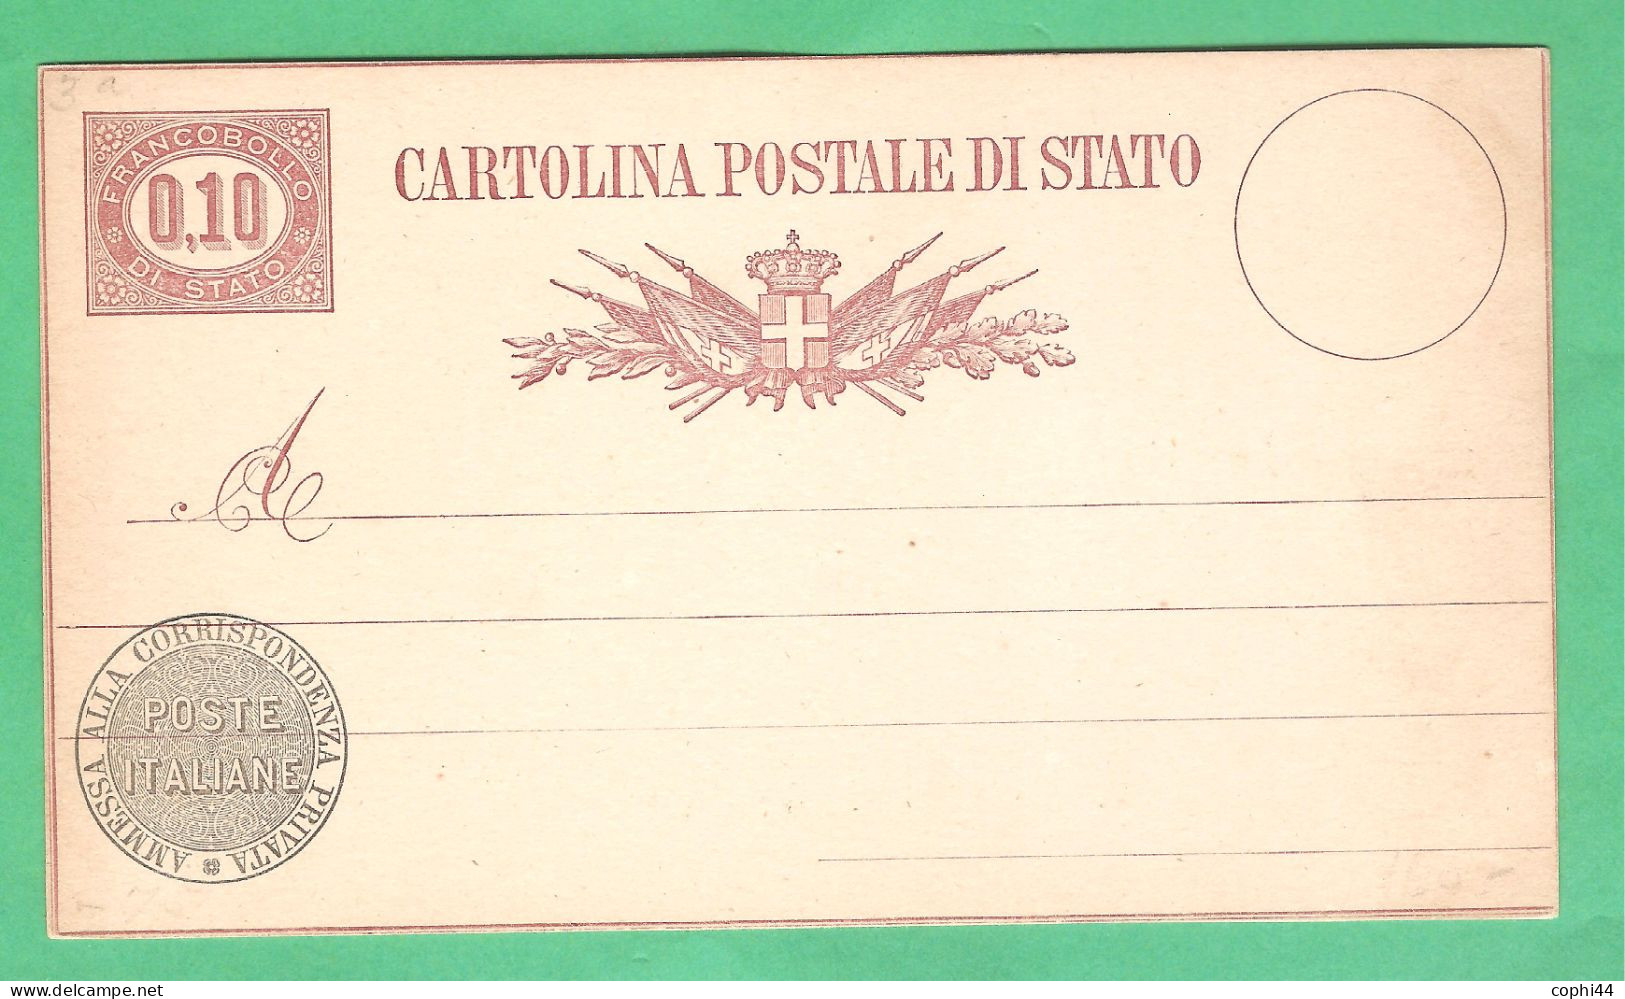 REGNO D'ITALIA 1877 VEII CARTOLINA POSTALE SERVIZIO DI STATO N. 3 Lire 0,10 NUOVA 2 FILETTI BUONE CONDIZIONI - Entero Postal